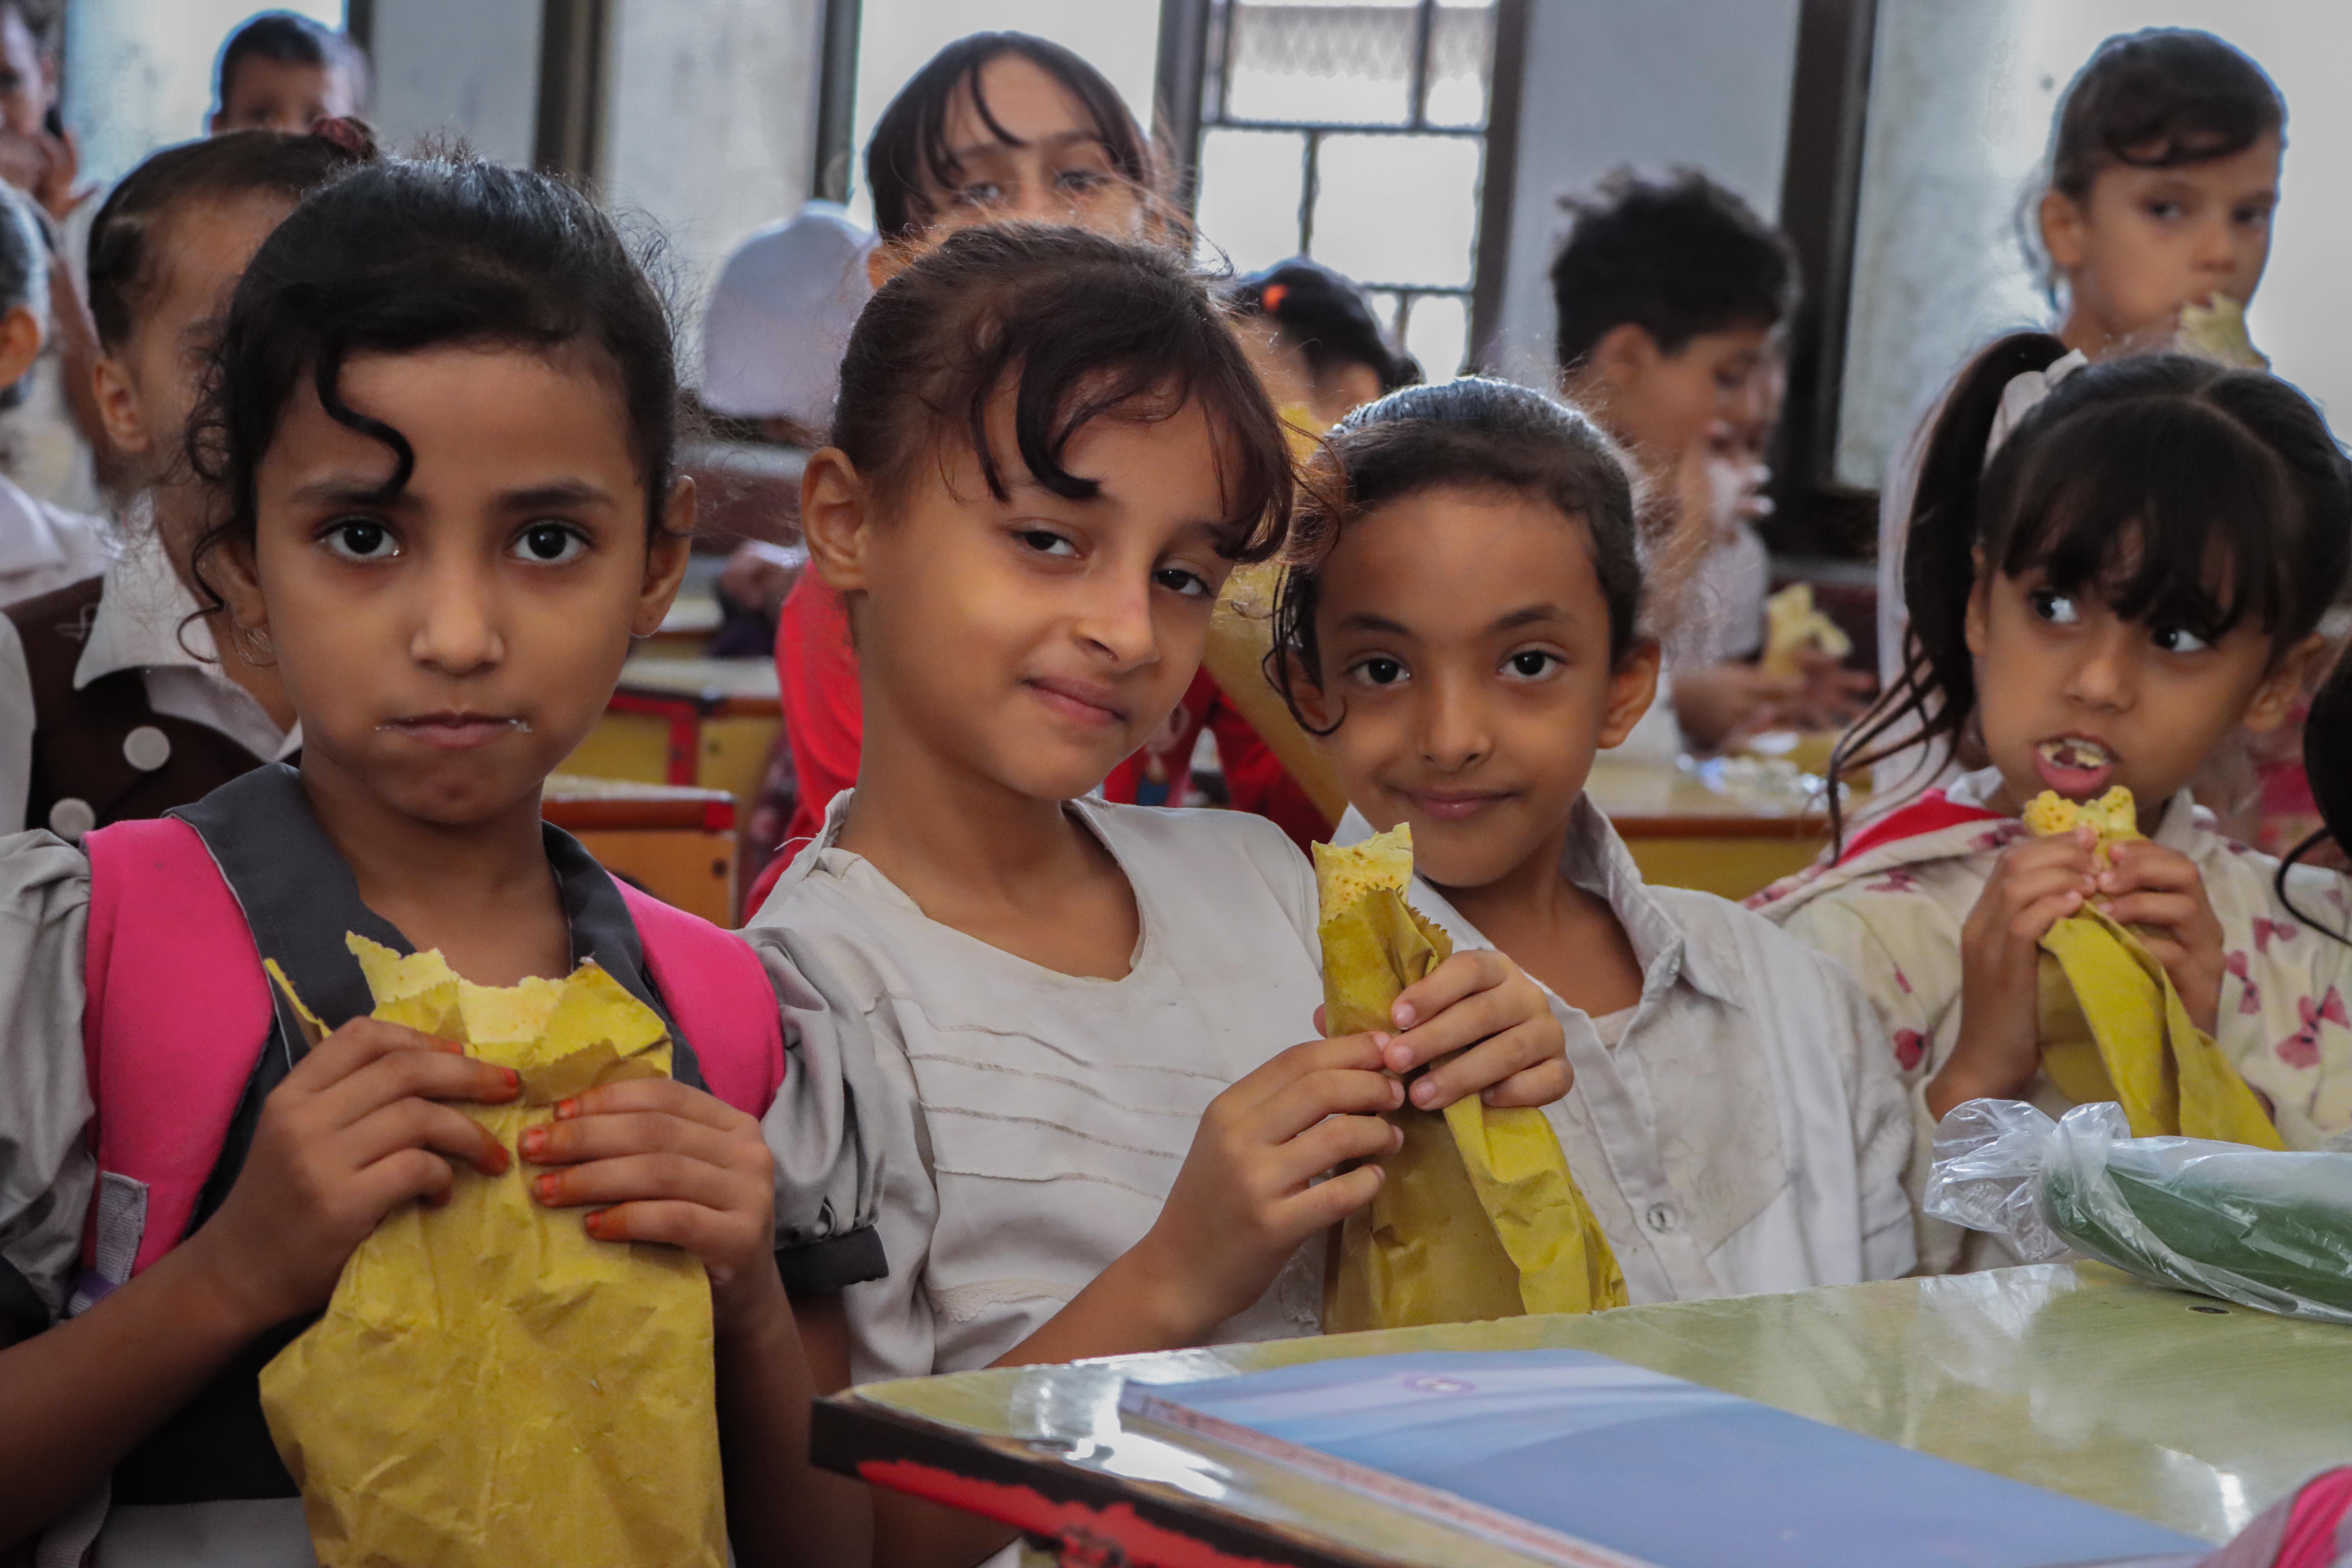 Schulkinder aus Madagaskar sitzen auf Bänken in einem kleinen Klassenraum mit gefüllten Tellern in der Hand